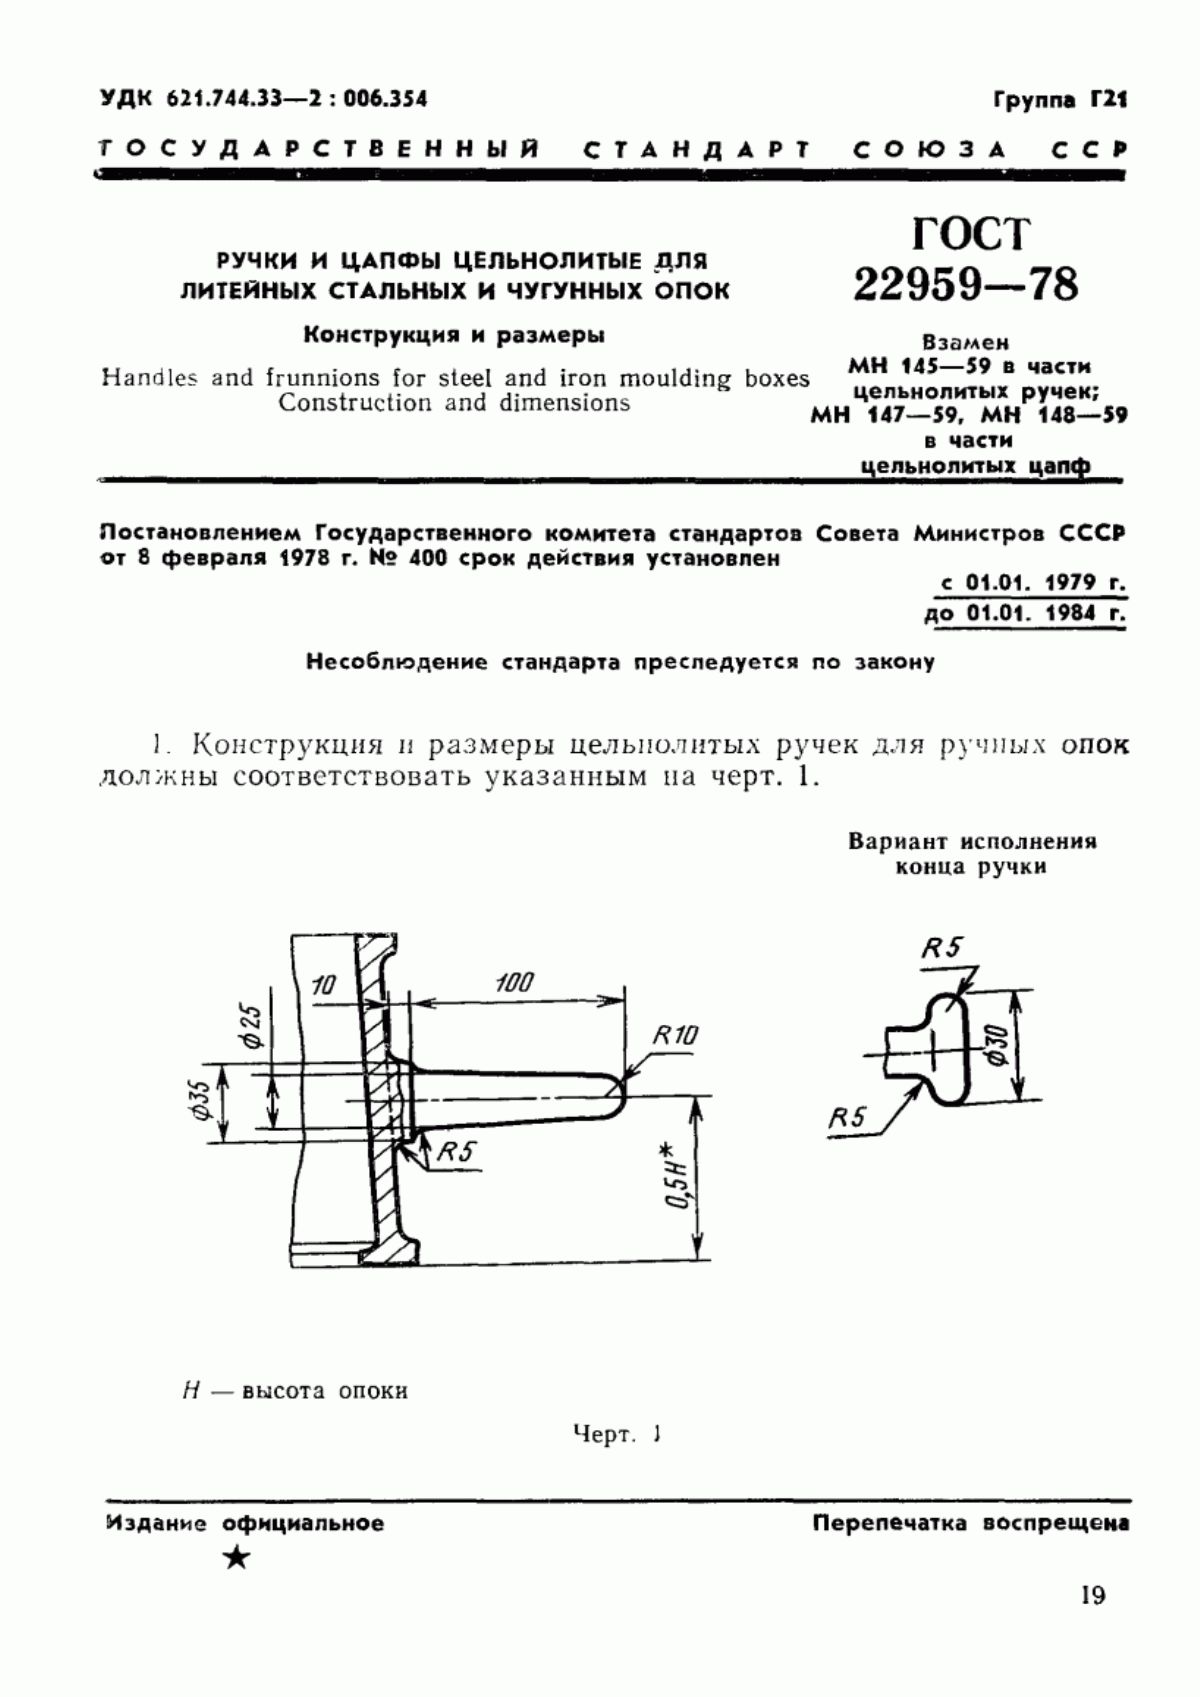 ГОСТ 22959-78 Ручки и цапфы цельнолитые для литейных стальных и чугунных опок. Конструкция и размеры